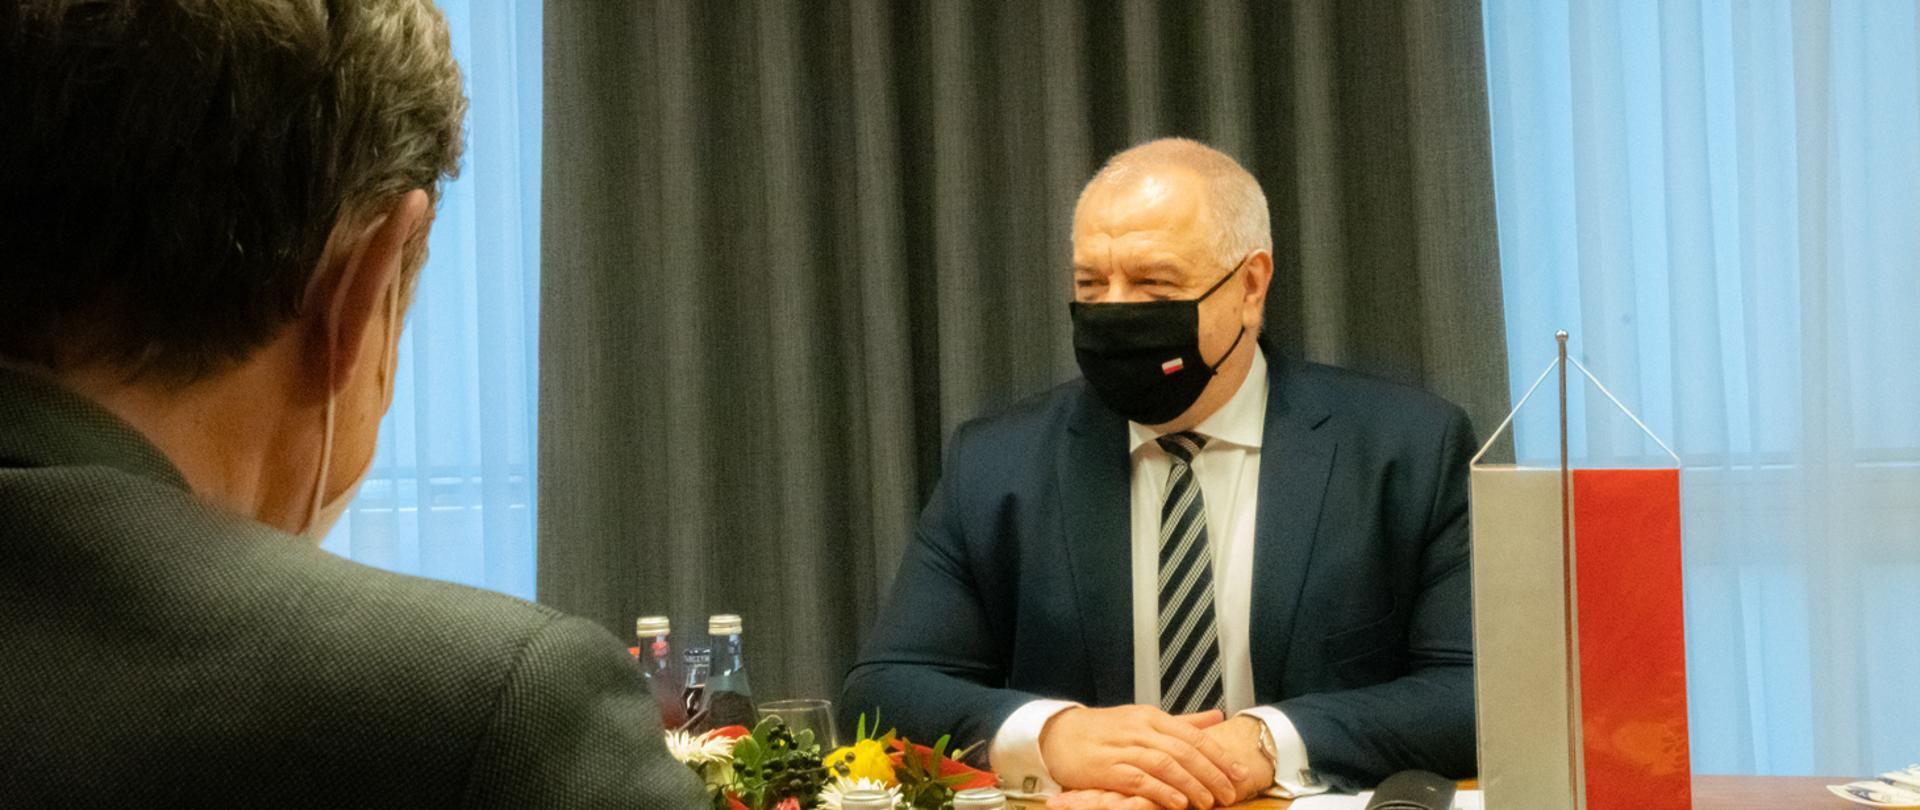 Ujęcie zza ramienia ambasadora. Wicepremier Jacek Sasin siedzi w maseczce naprzeciw swojego rozmówcy. Trzyma dłonie złożone na blacie. Po prawej stronie stoi mała polska flaga.